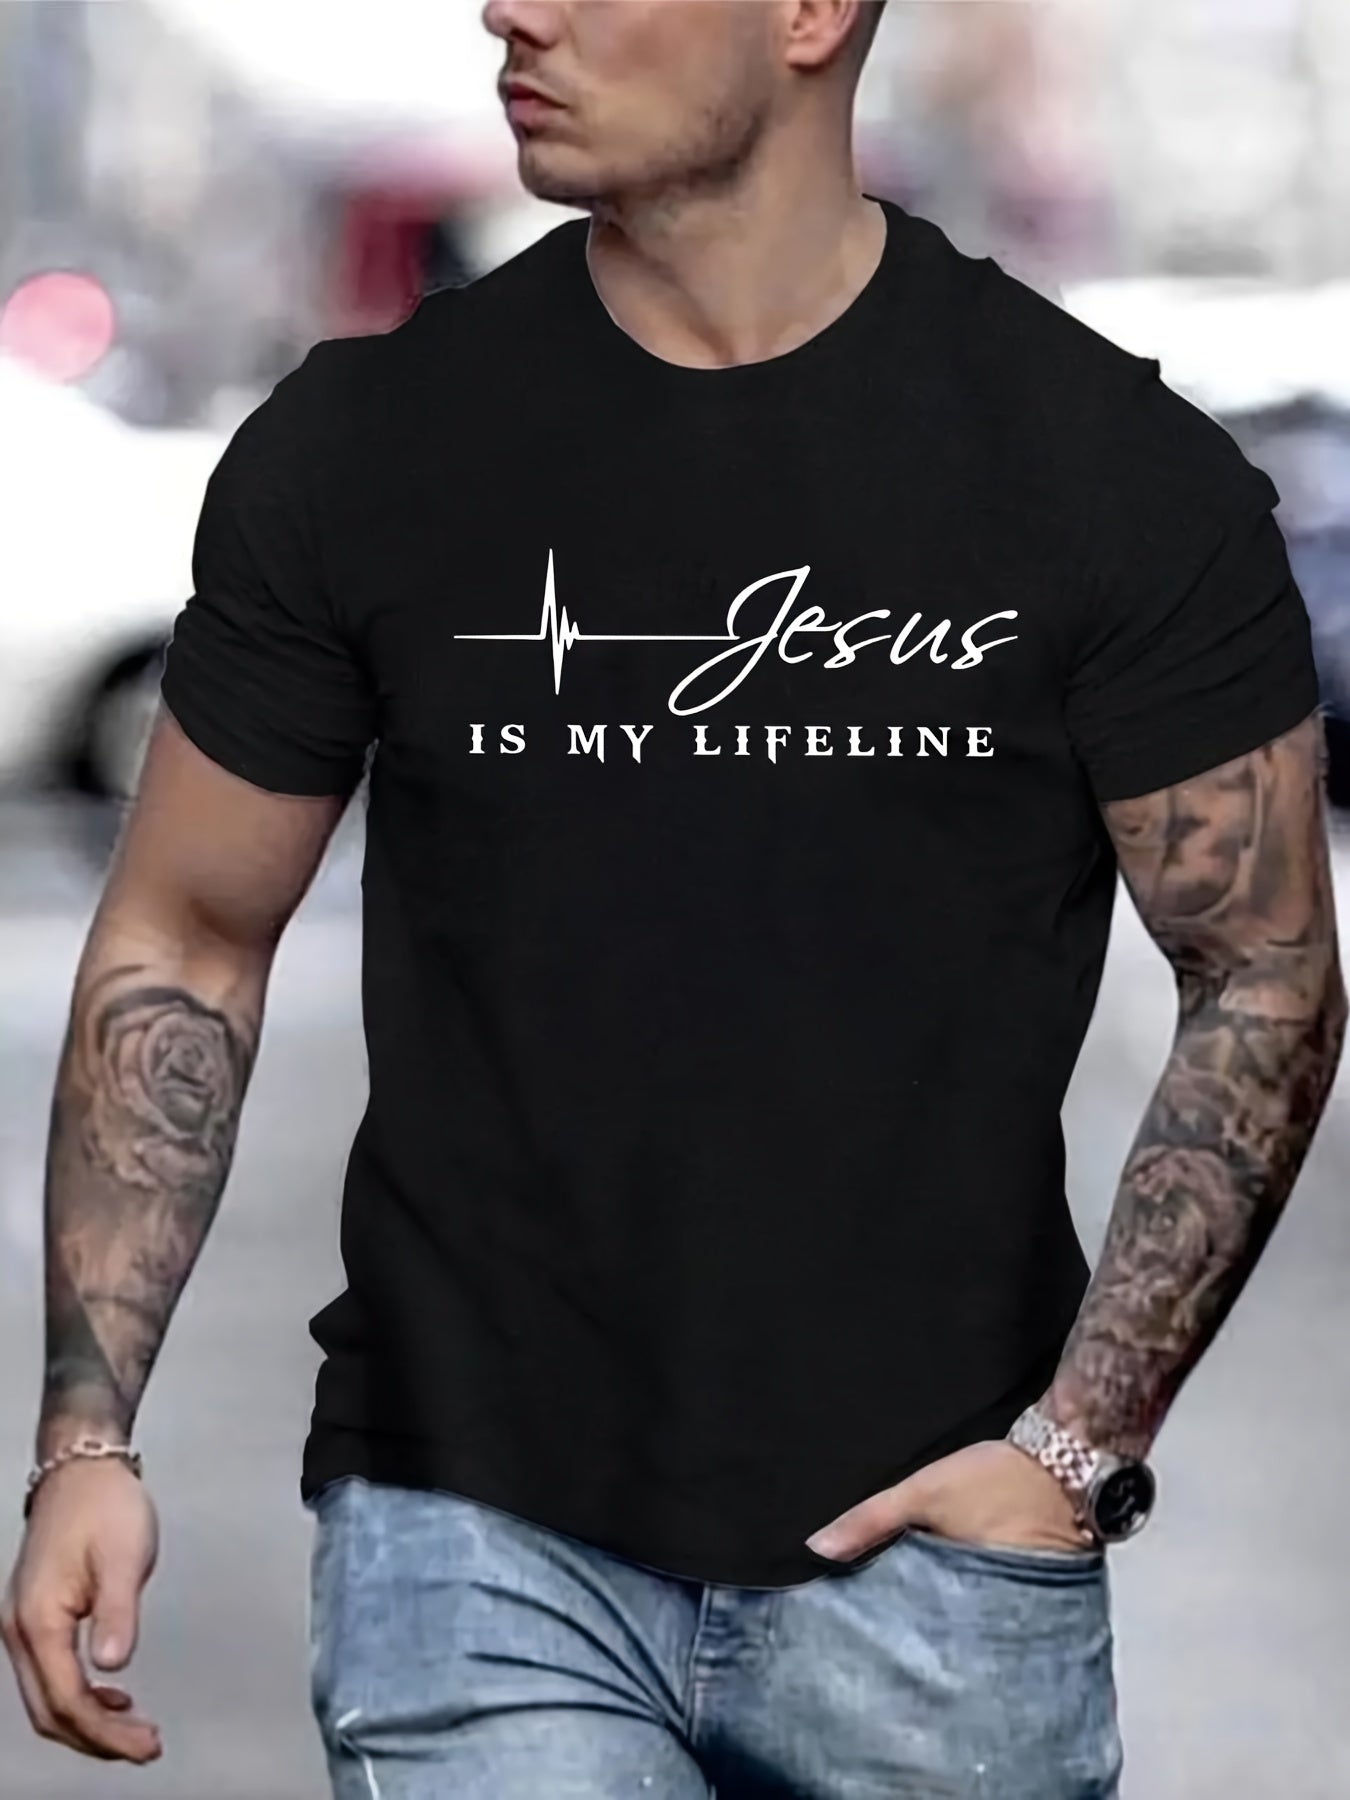 Jesus Is My Lifeline Men's Christian T-shirt claimedbygoddesigns